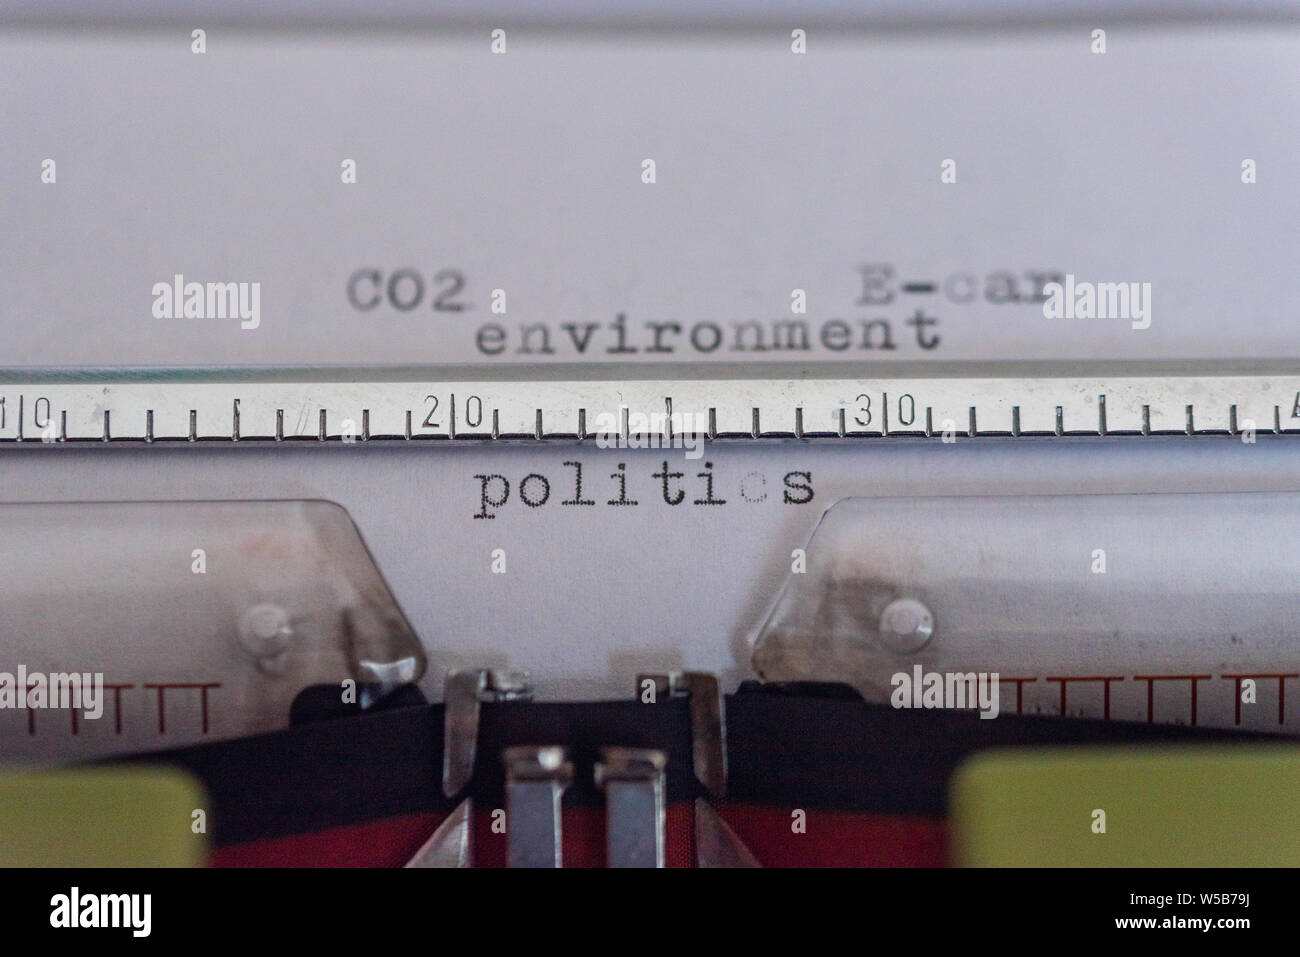 Nastri inchiostratori per macchine da scrivere con una foglia e parole ambiente, CO2, E-cars e politica Foto Stock